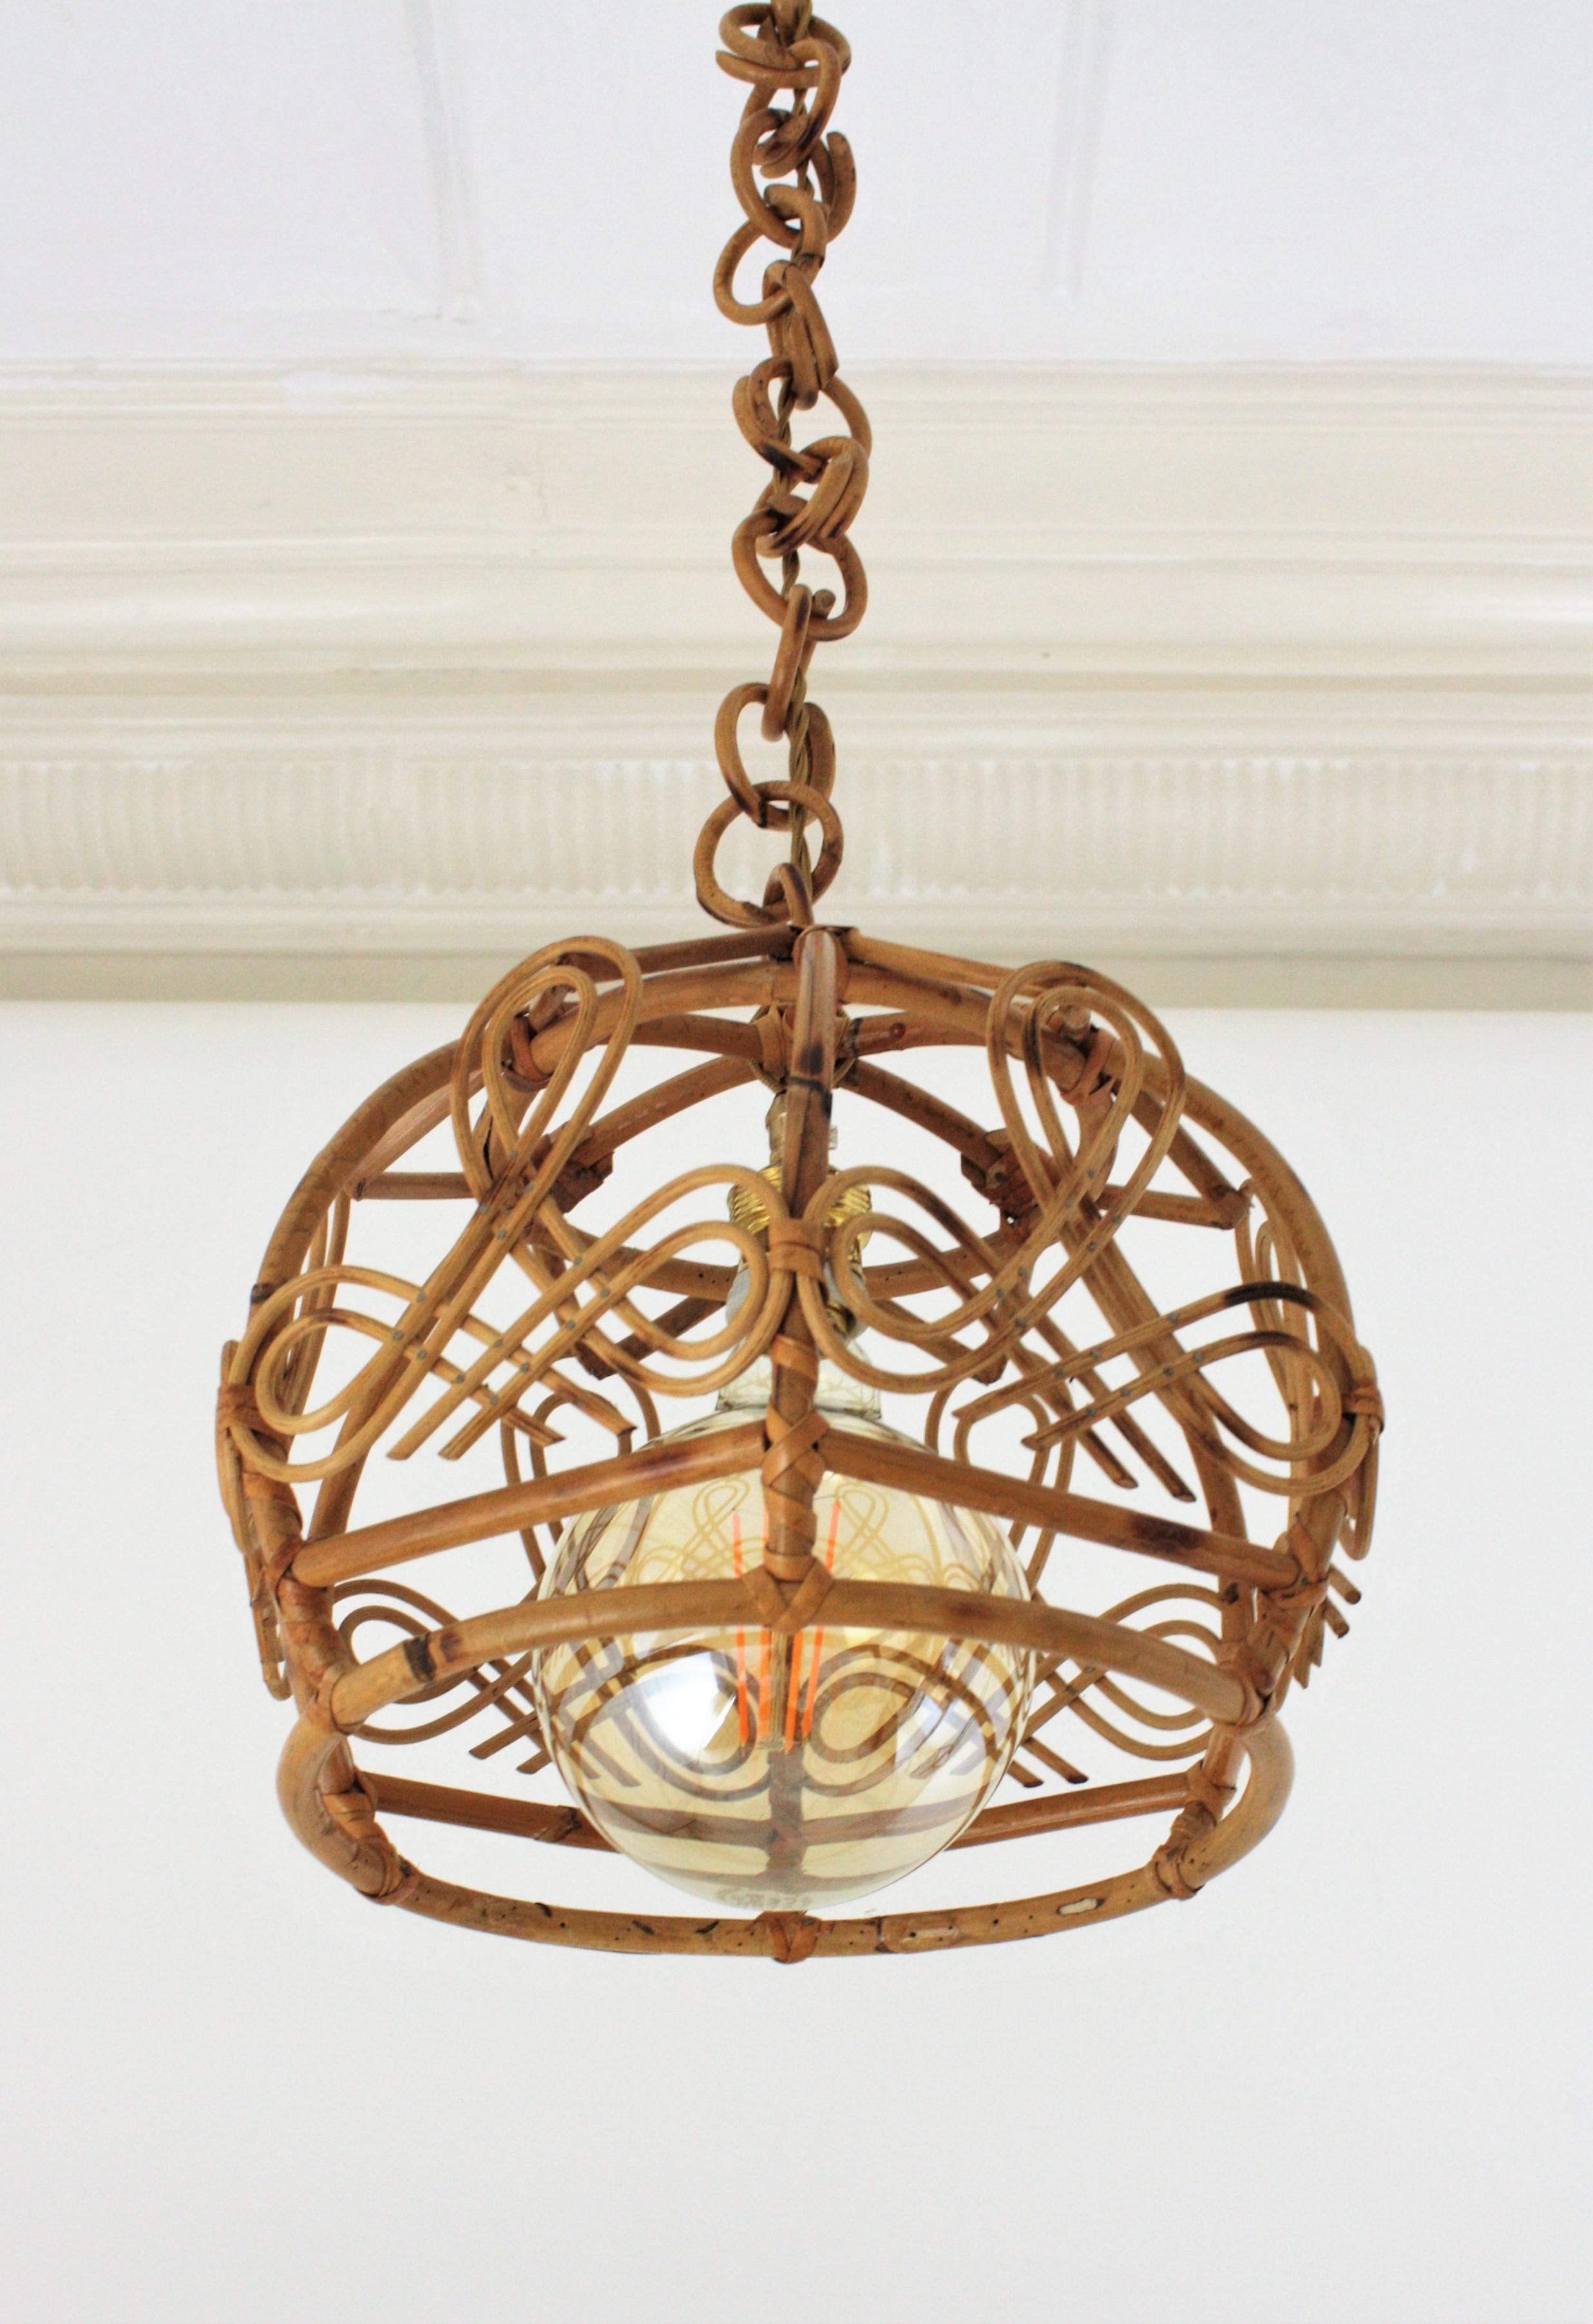 Glockenförmige Hängeleuchte oder Laterne aus Bambus und Rattan, akzentuiert durch orientalische Details, Frankreich, 1960er Jahre.
Diese handgefertigte Deckenlampe hat einen glockenförmigen Bambusschirm mit Chinoiserie-Verzierungen, der an einer